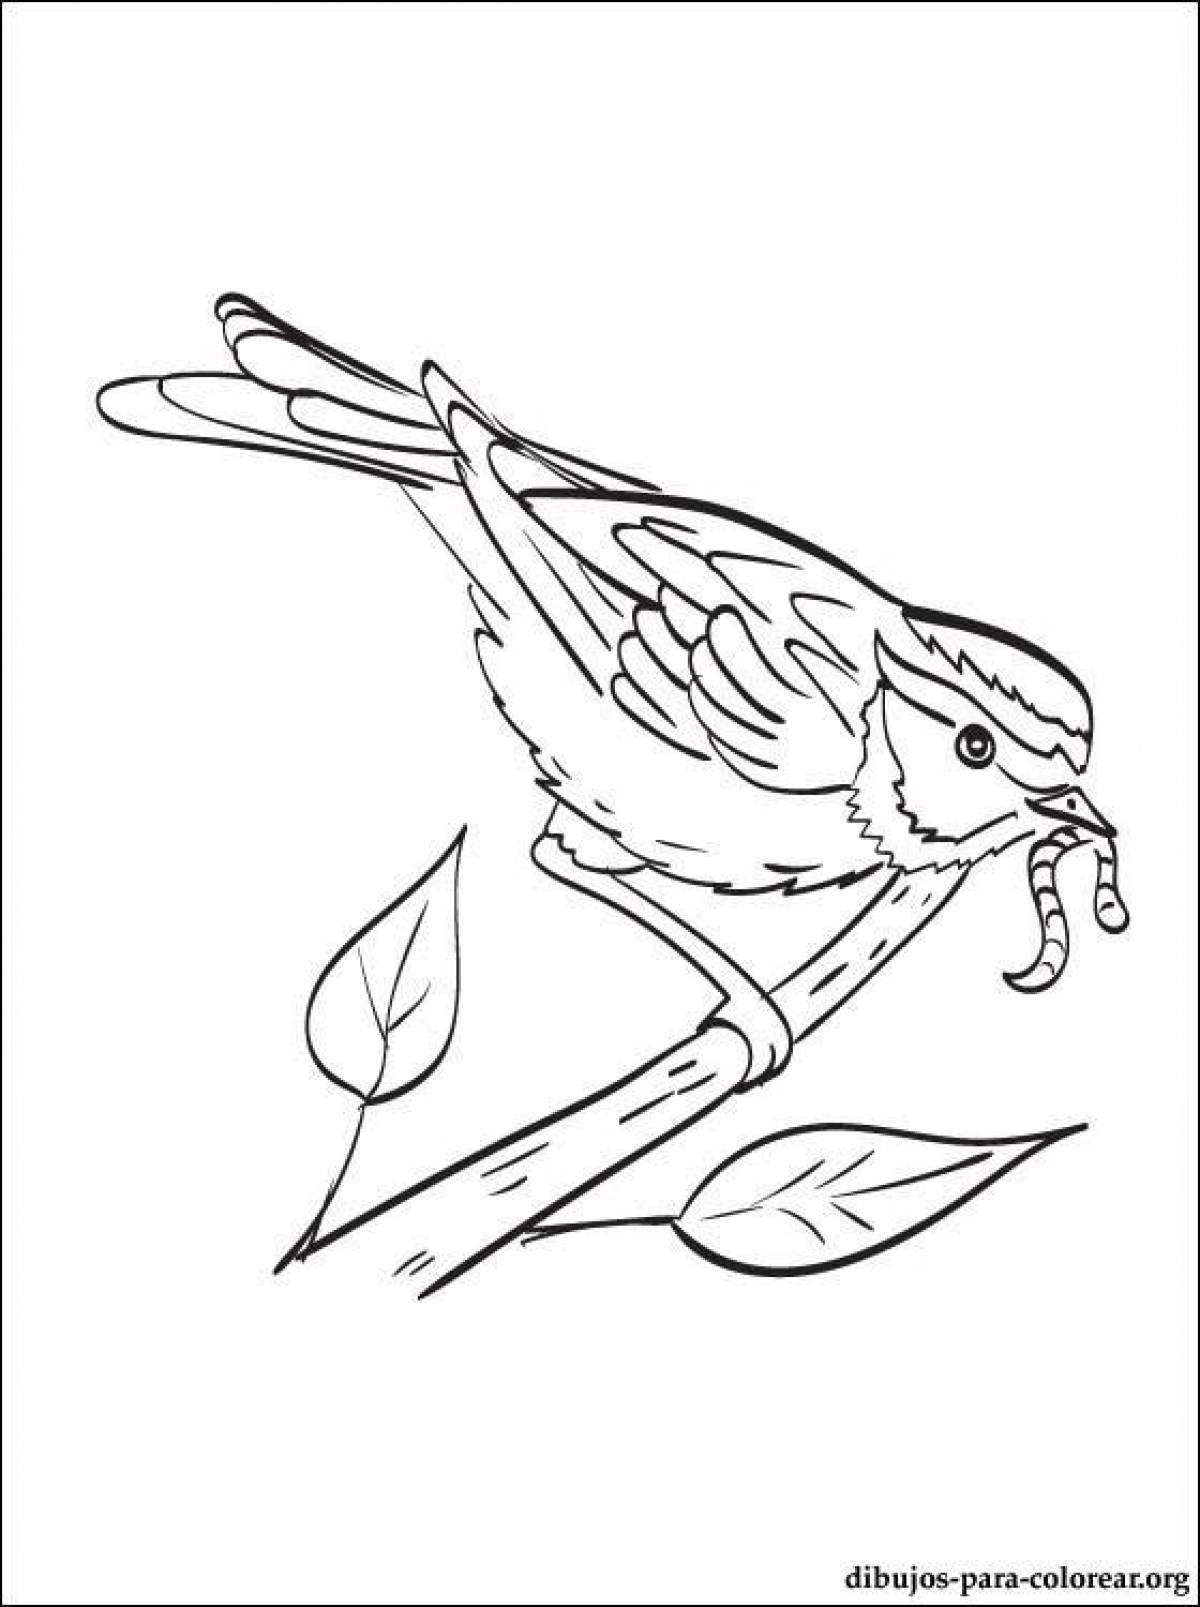 Beckoning disheveled sparrow